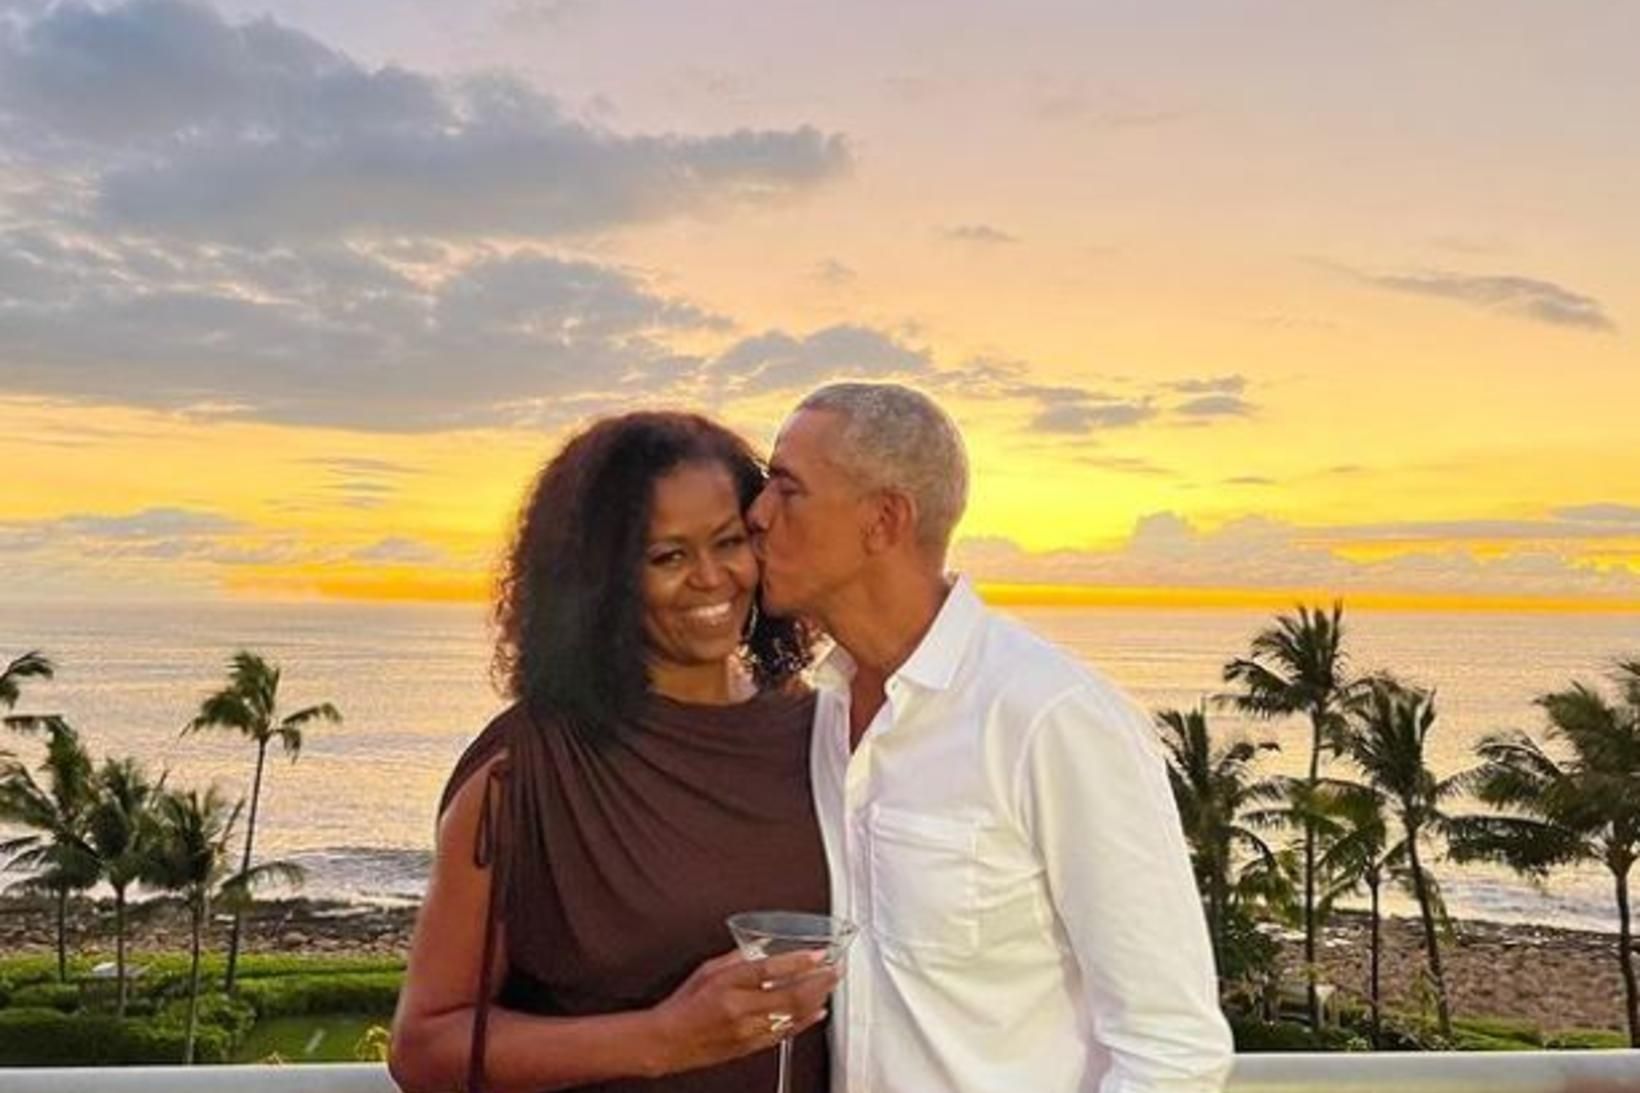 Michelle og Barack Obama eru ástfangin. Forsetafrúin fyrrverandi varð 58 …